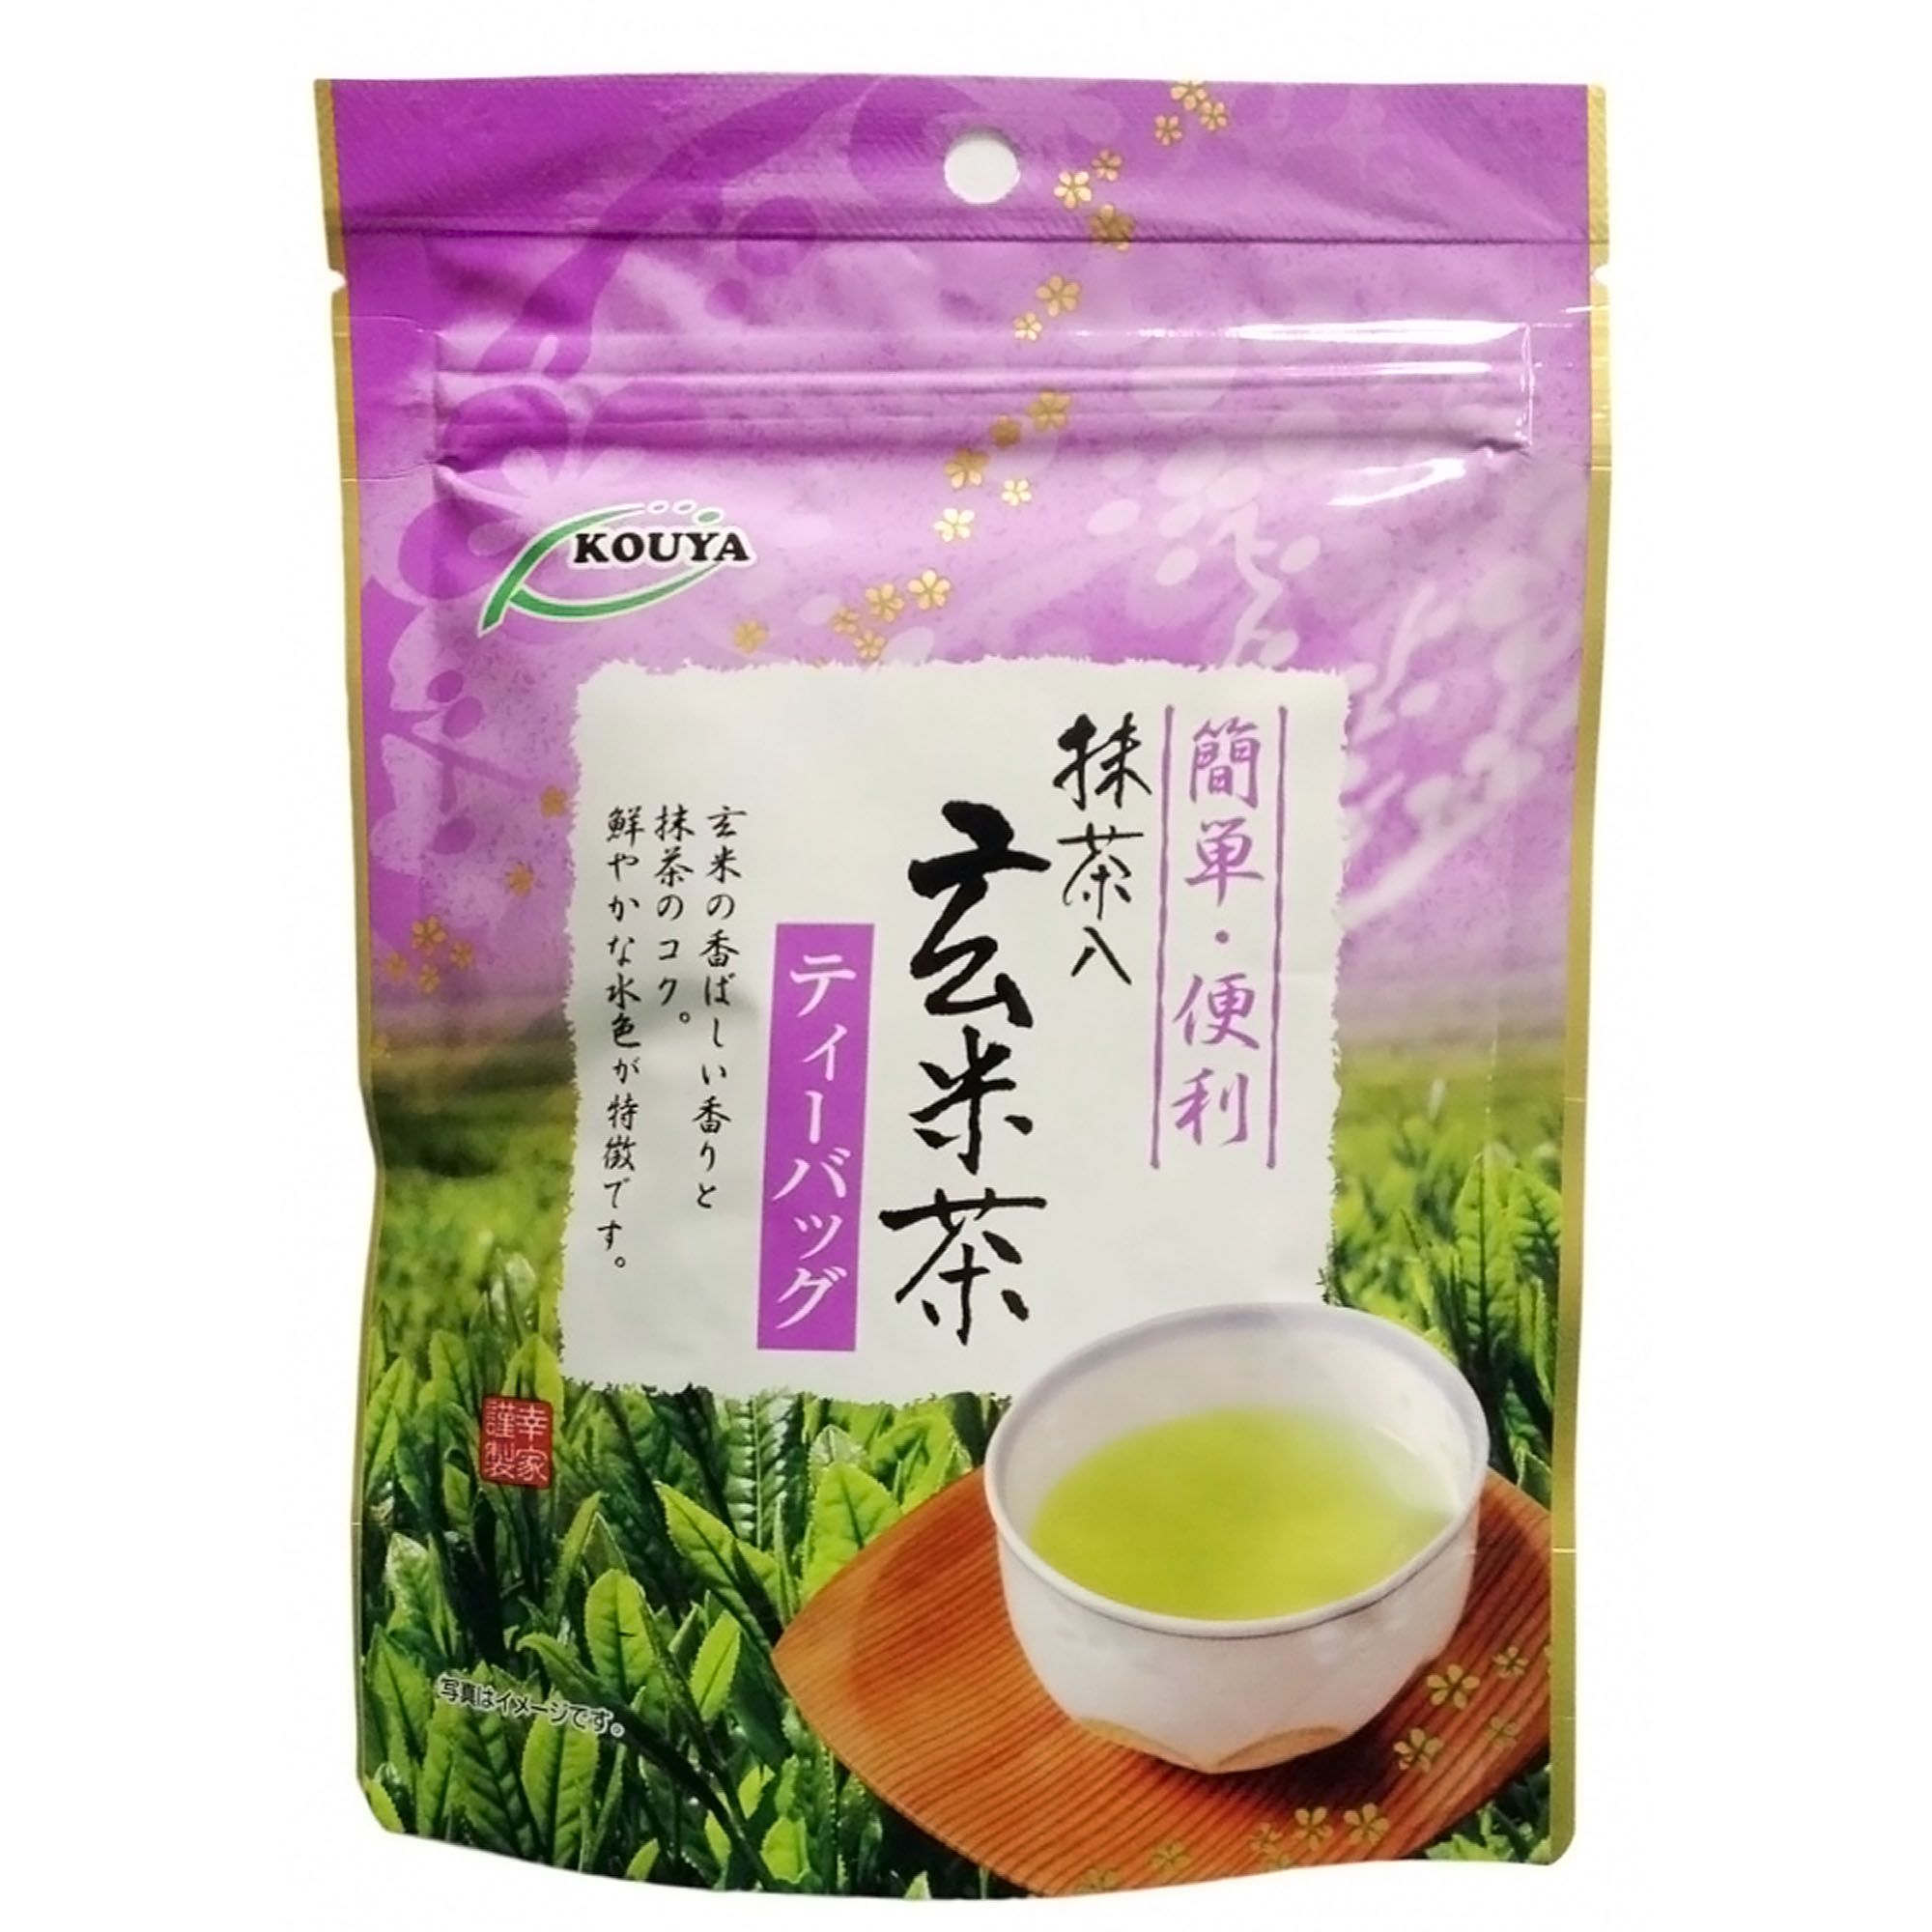 Японский чай Kouya Геммай-ча (15 шт), 30 г чай оргтиум матча зеленый с кокосовым молоком 150 г саше